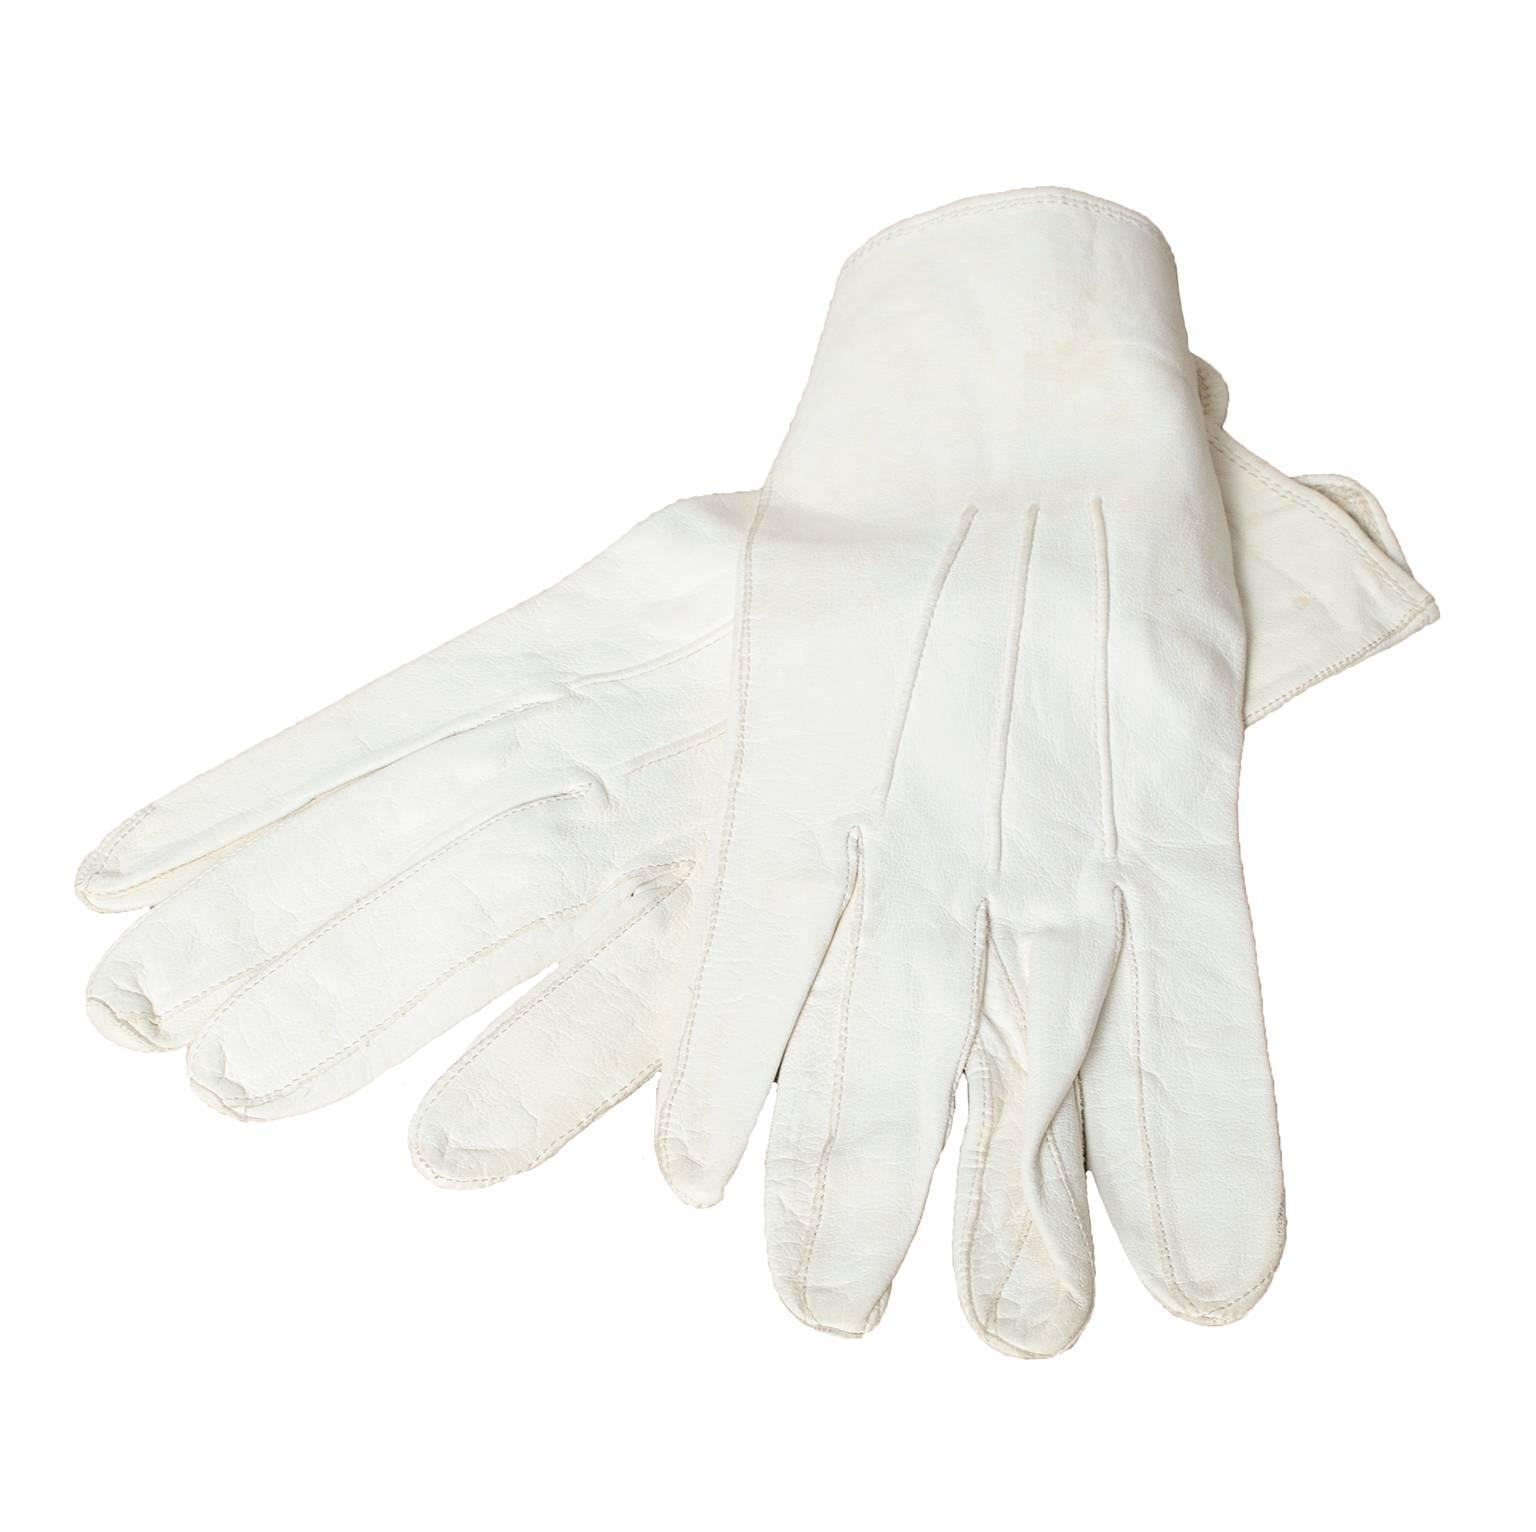 Men's White Kidskin Chauffeur Gloves, 1950s